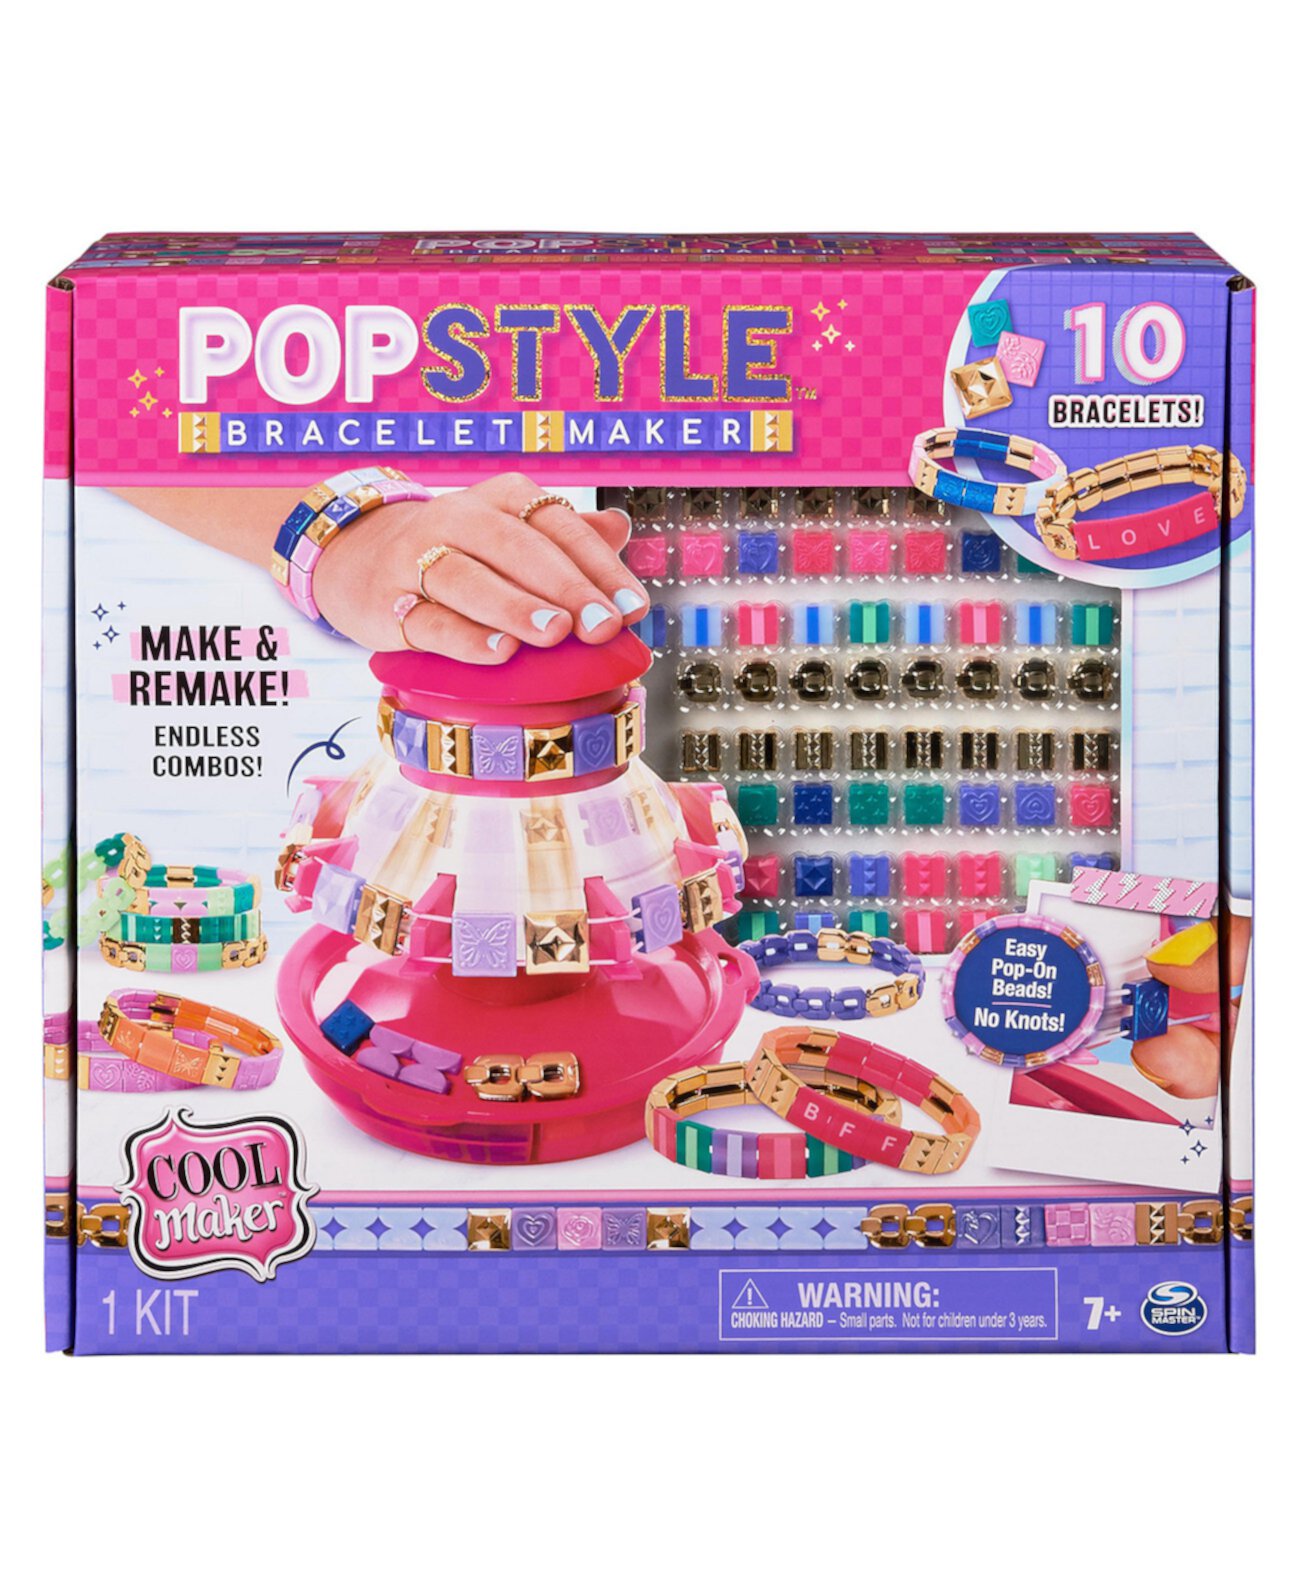 Устройство для изготовления браслетов в стиле попстиль, 170 стильных бусин, 10 браслетов, хранилище, набор для изготовления браслетов дружбы, детские игрушки для девочек своими руками Cool Maker